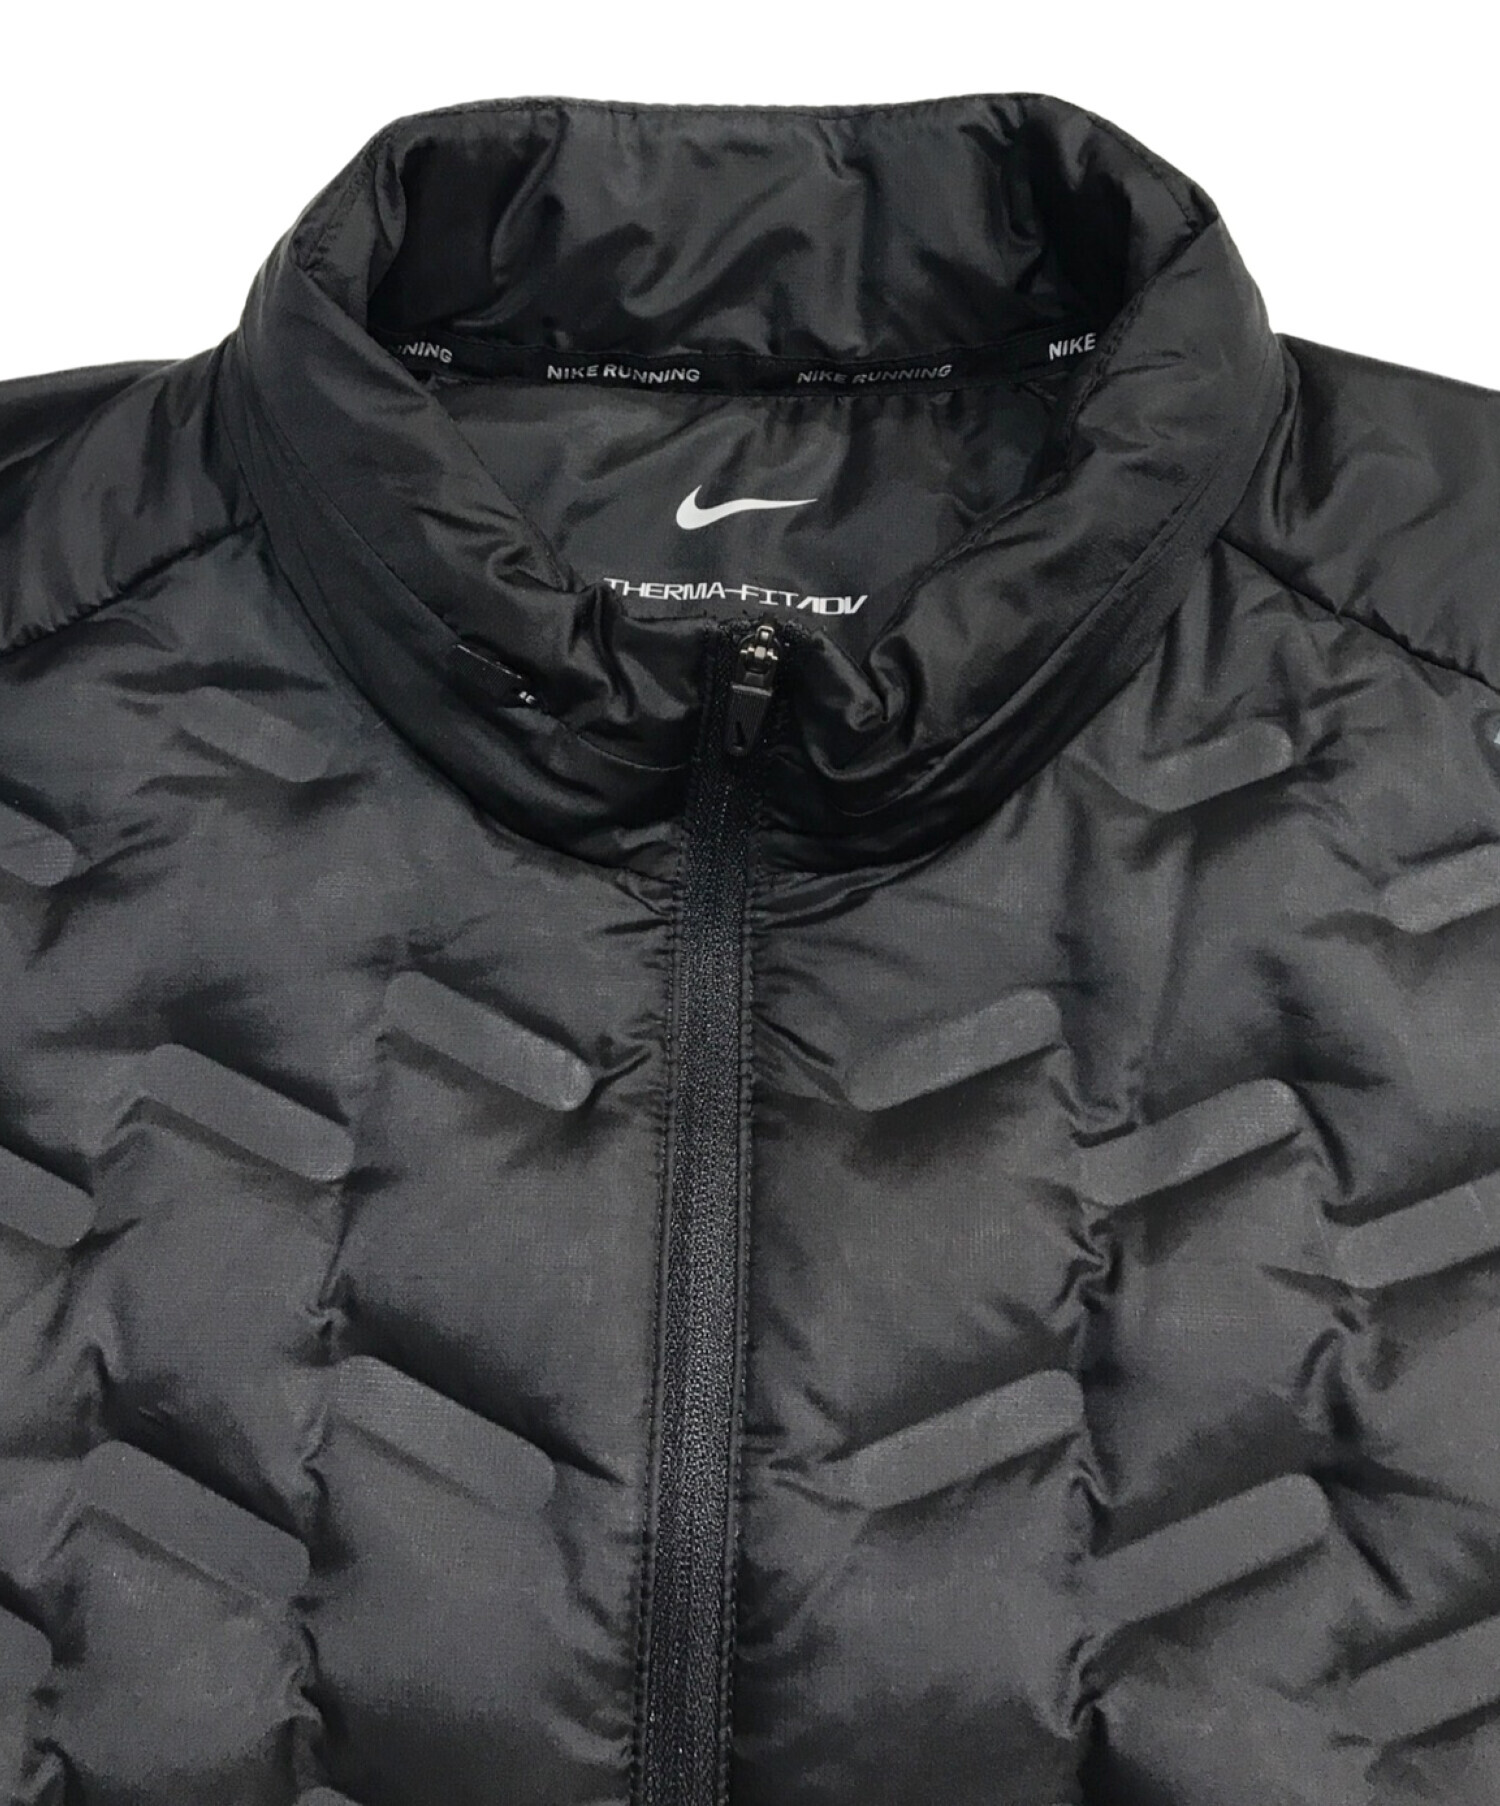 NIKE (ナイキ) ダウンフィル ランニングジャケット ブラック サイズ:XL